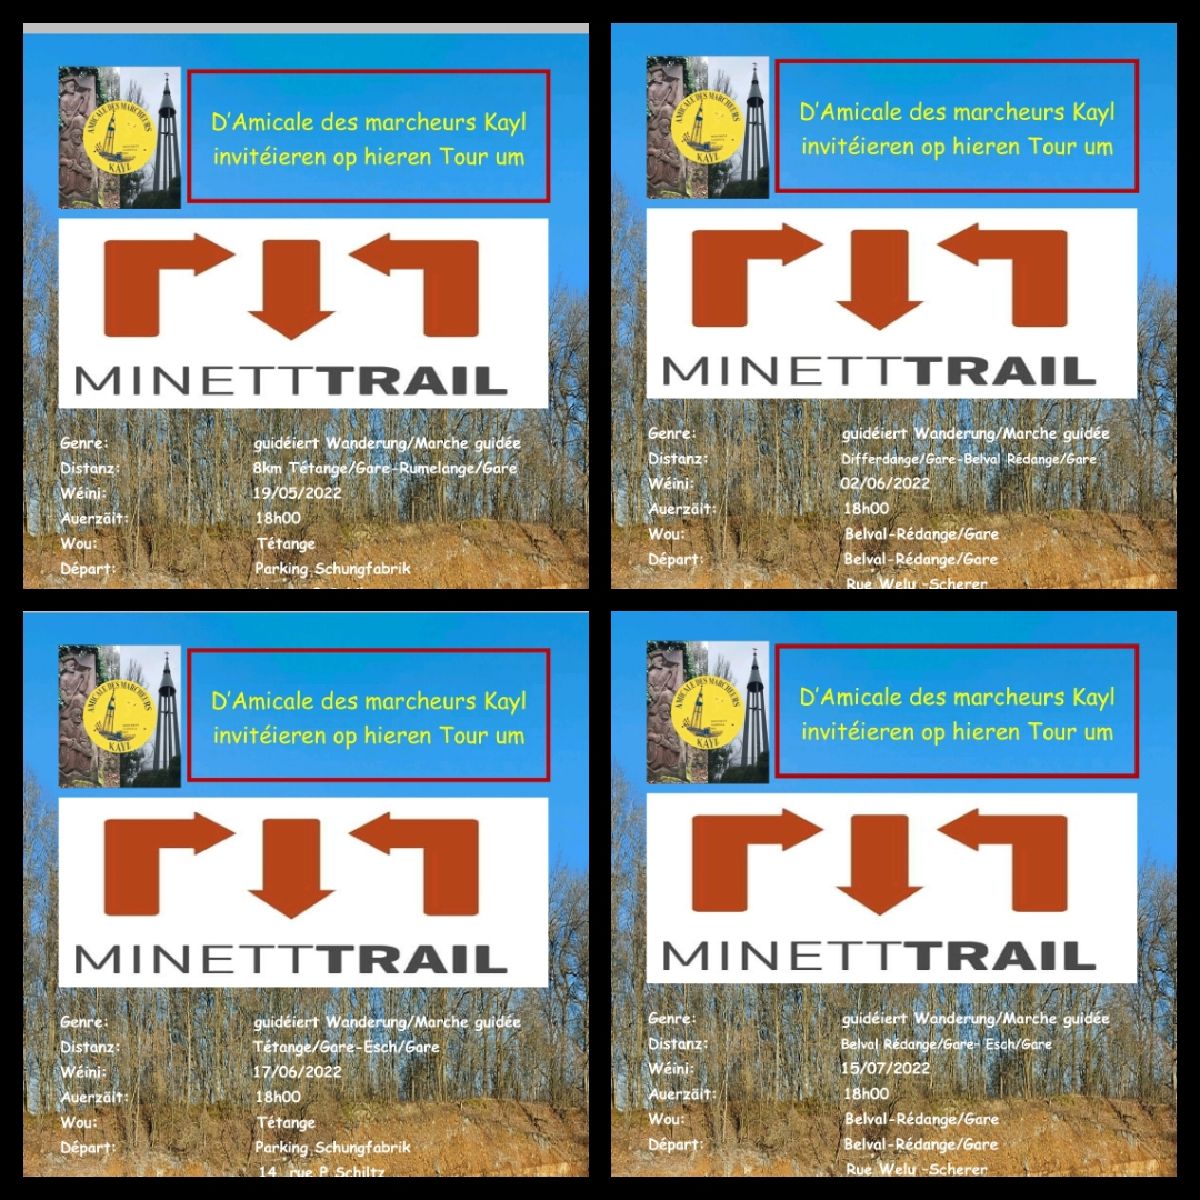 Minett Trail